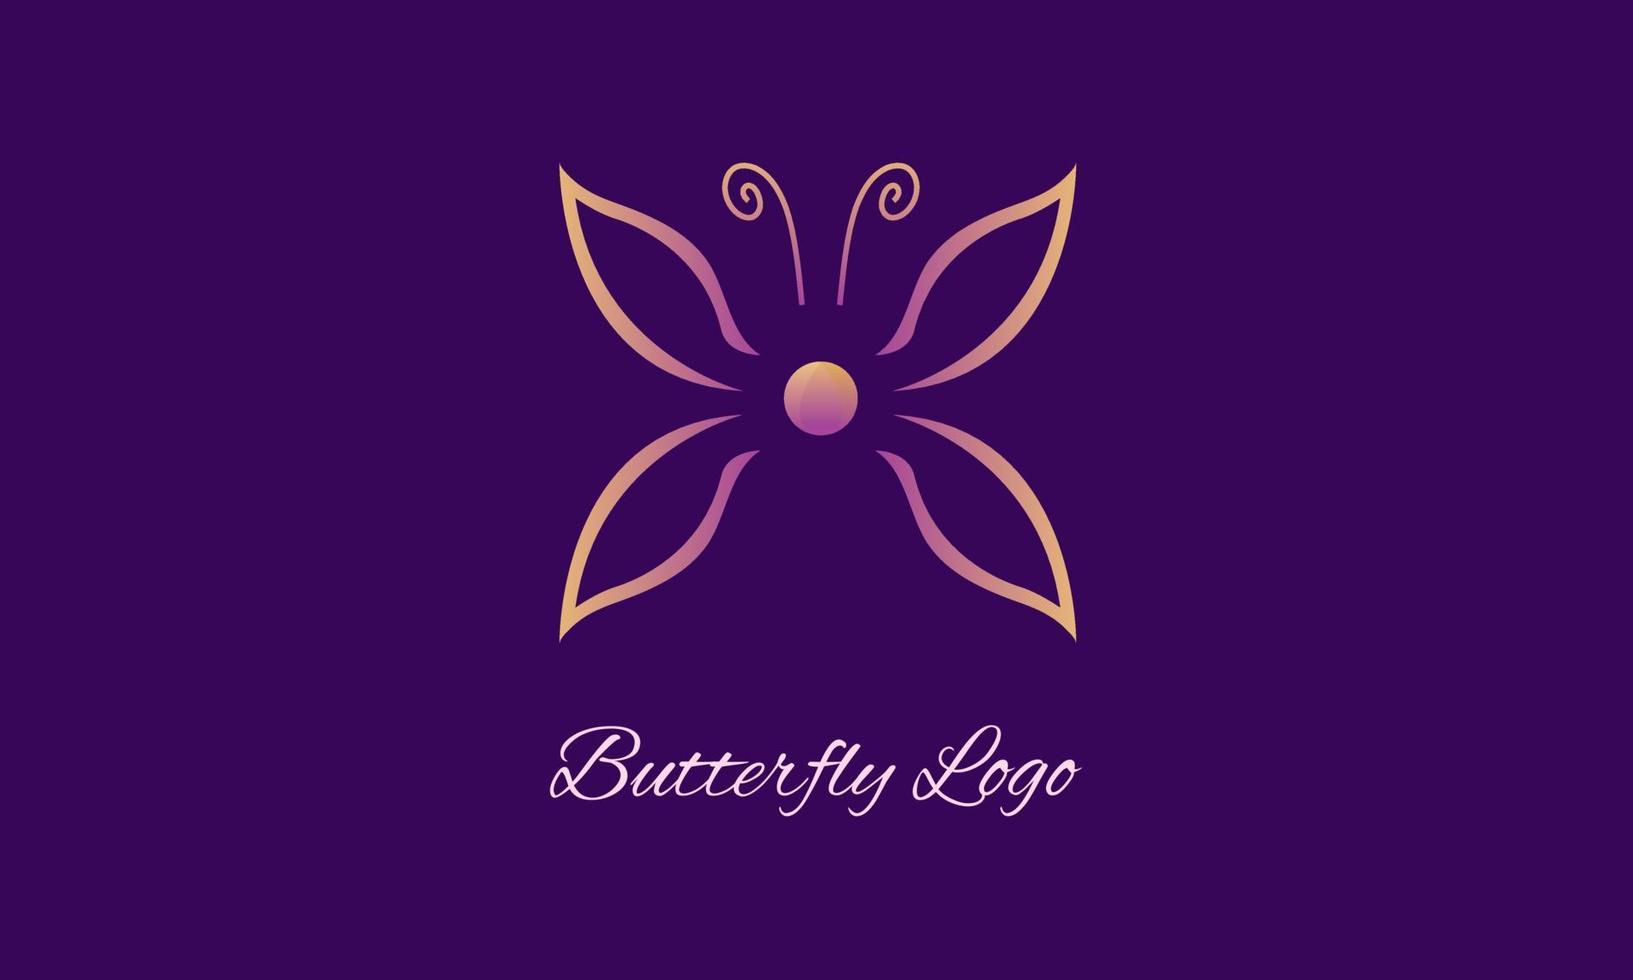 logo de mariposa, concepto simple y moderno adecuado para belleza, cosmética, salón, negocios y marcas de mujeres, estilo lineal minimalista vector